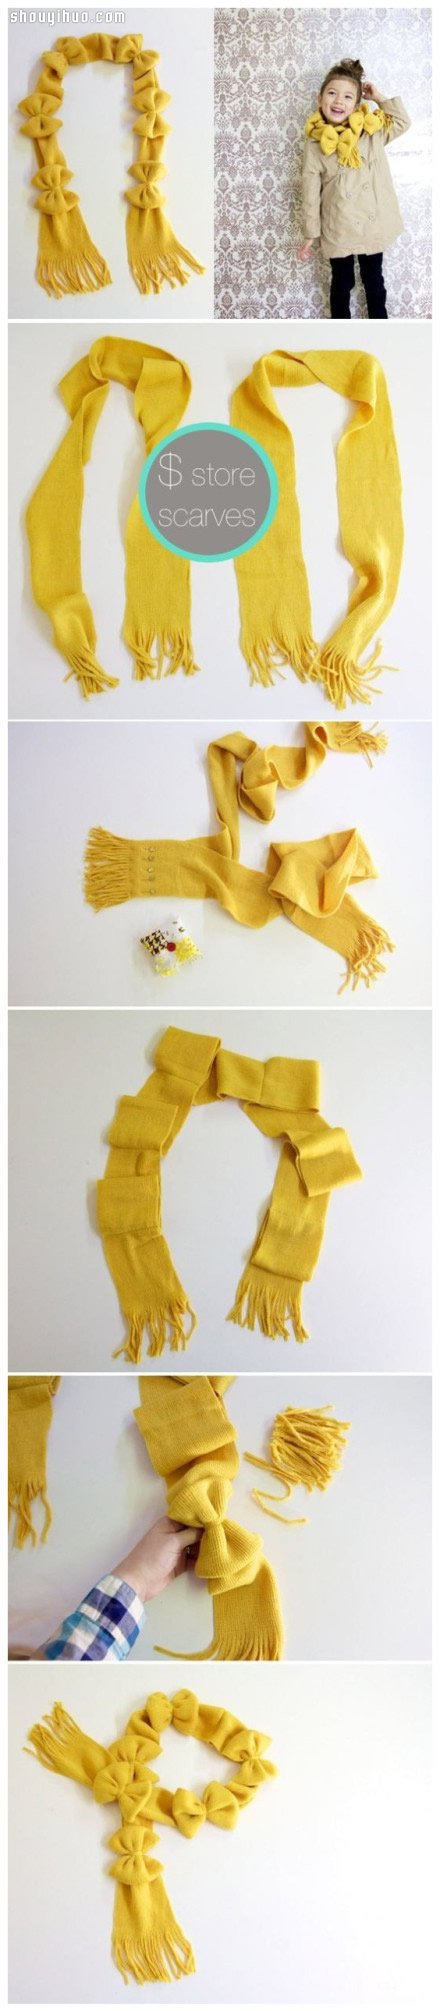 创意围巾美化DIY方法 围巾改造DIY漂亮围脖